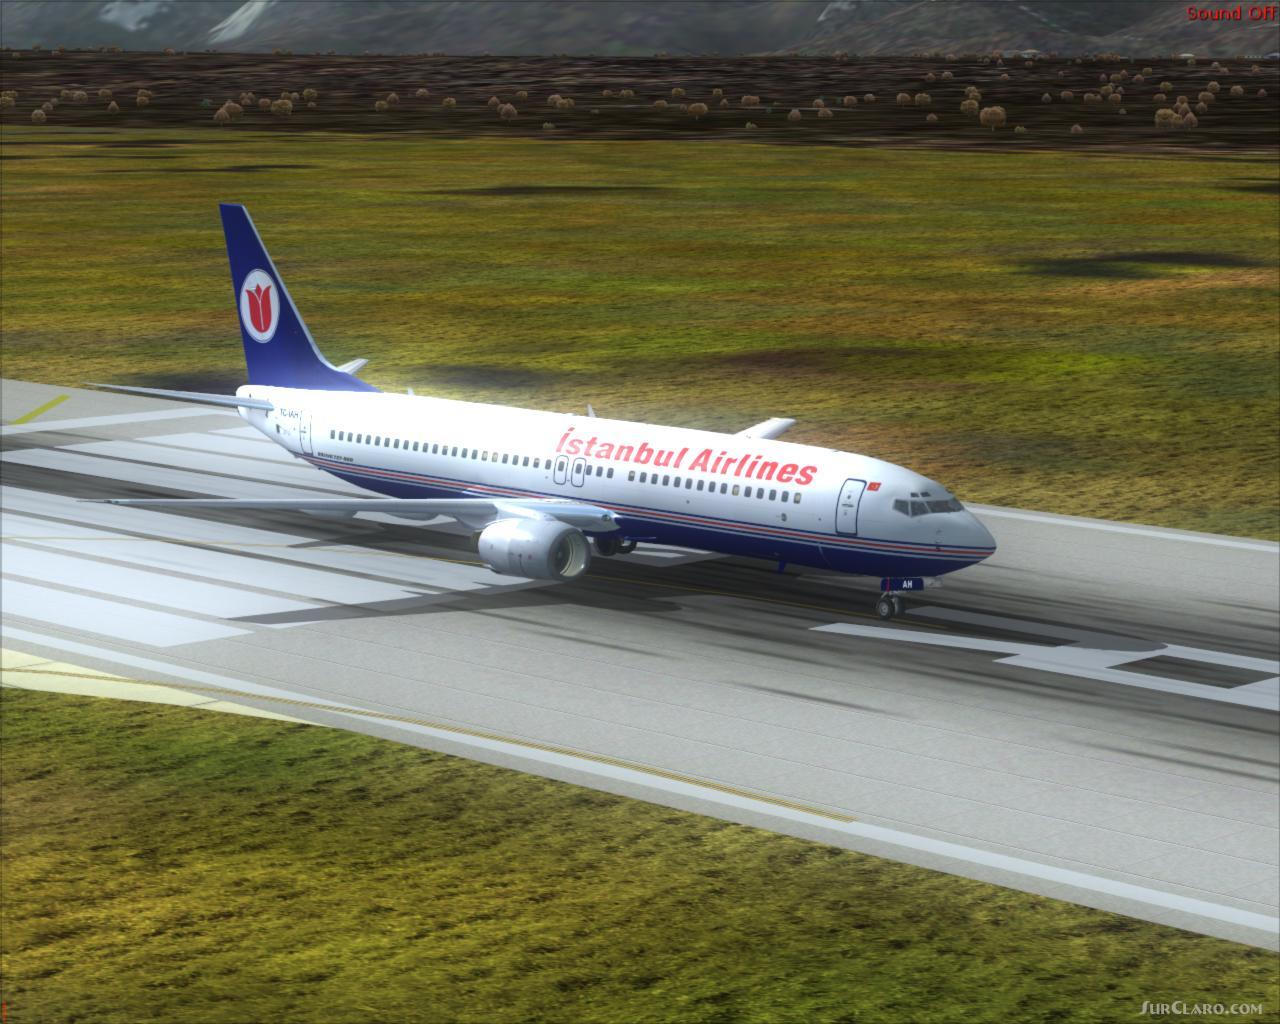 Стамбул airlines. Boeing 737-800 Air Pobeda fs2004. PMDG 737-800 fs2004. PMDG 737-800 fs2004 Скриншоты. Mango Airlines fs2004.